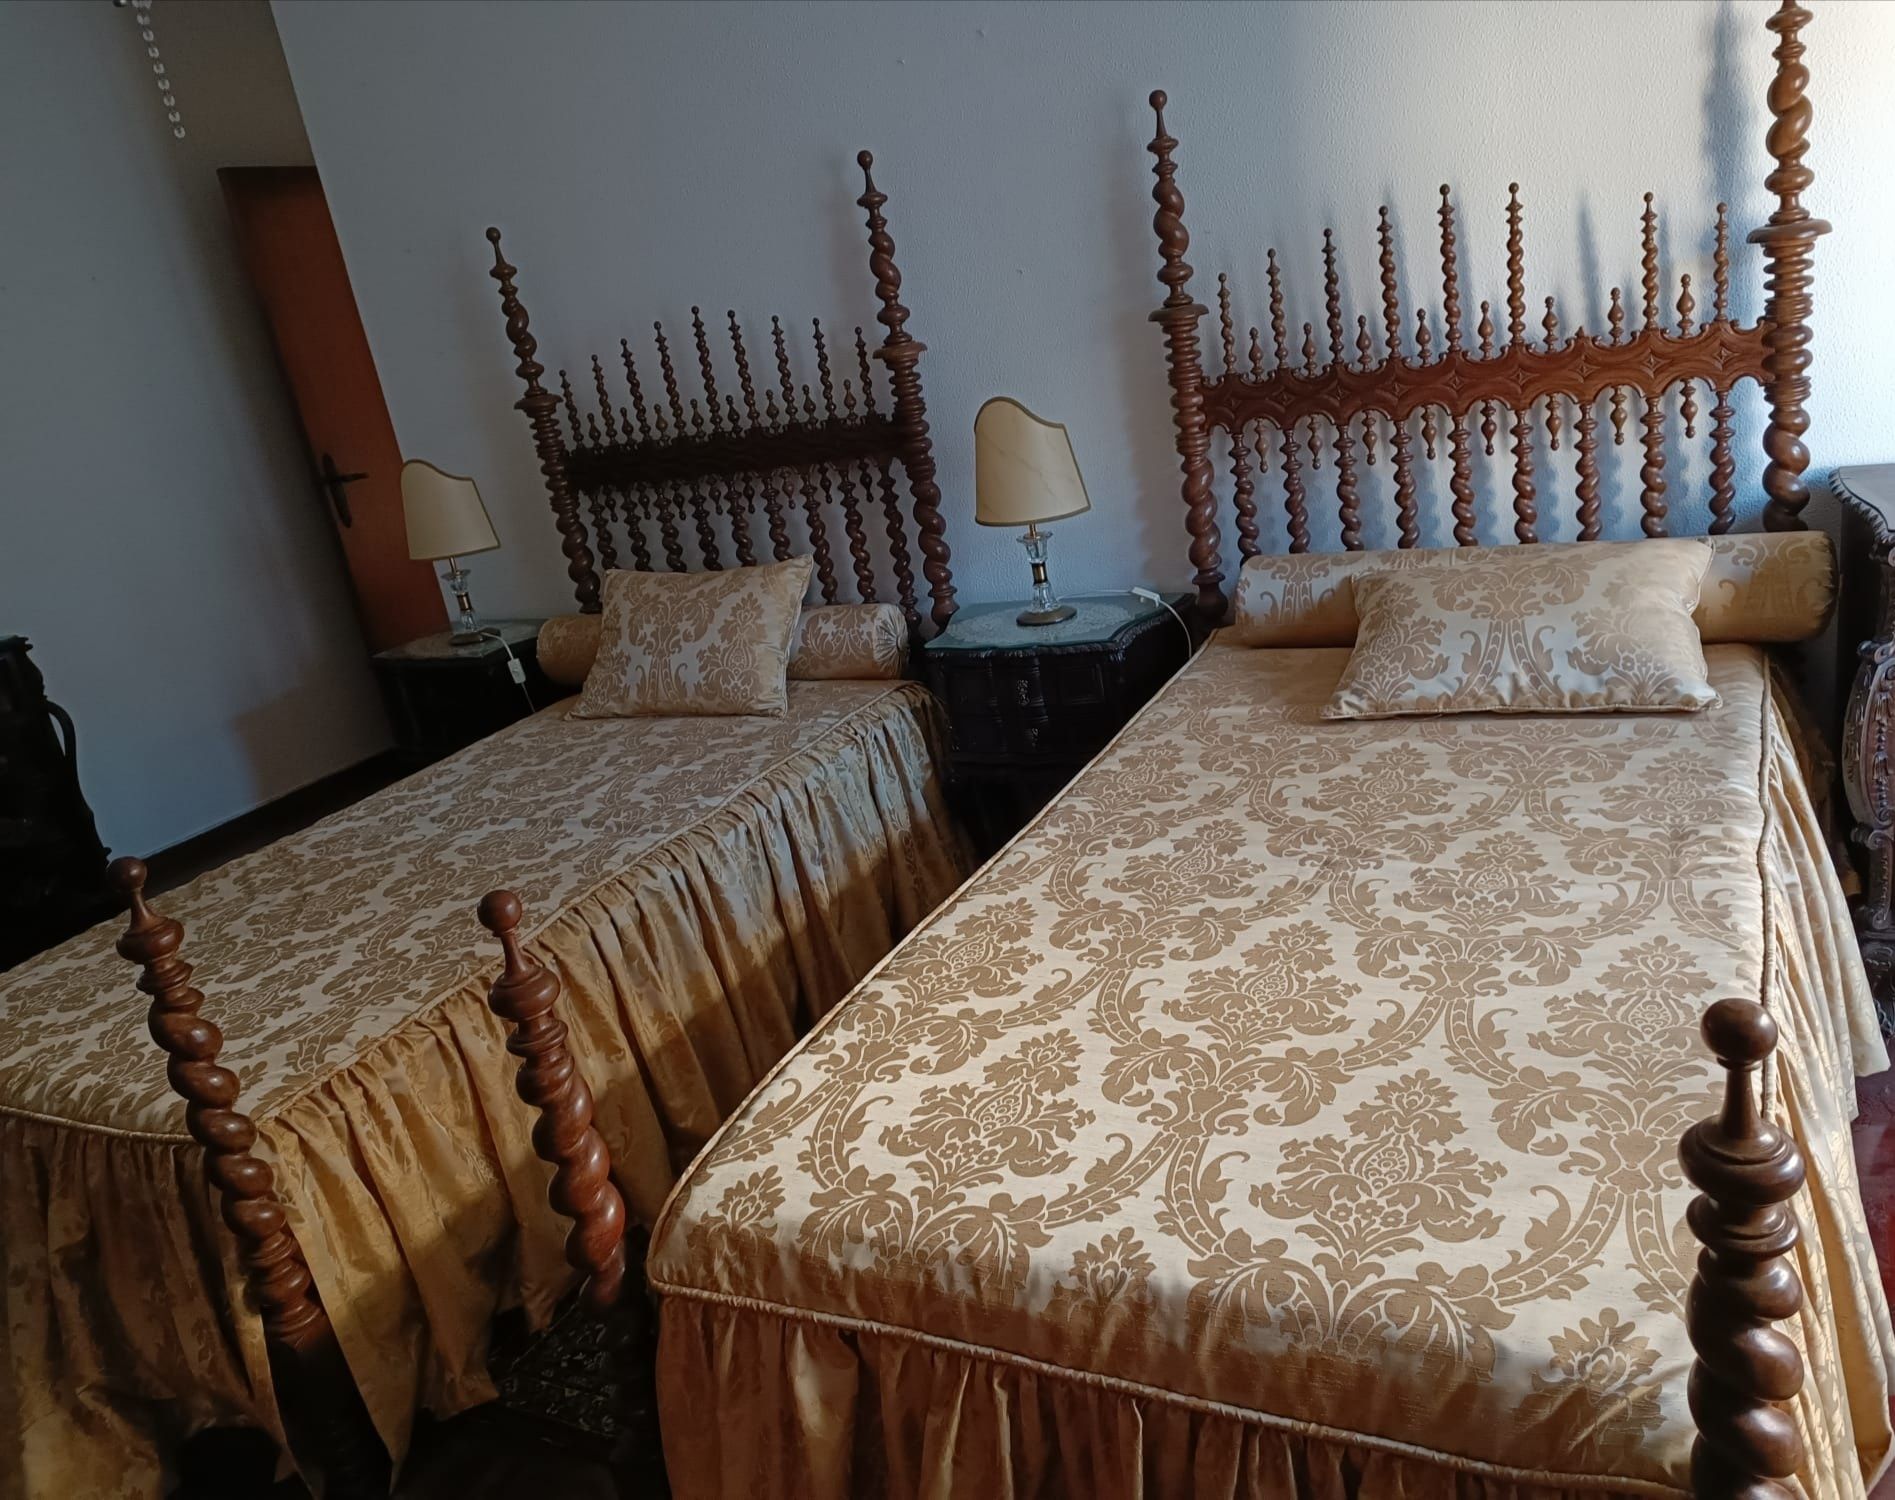 2 camas em madeira, colchões e com colchas e almofadas